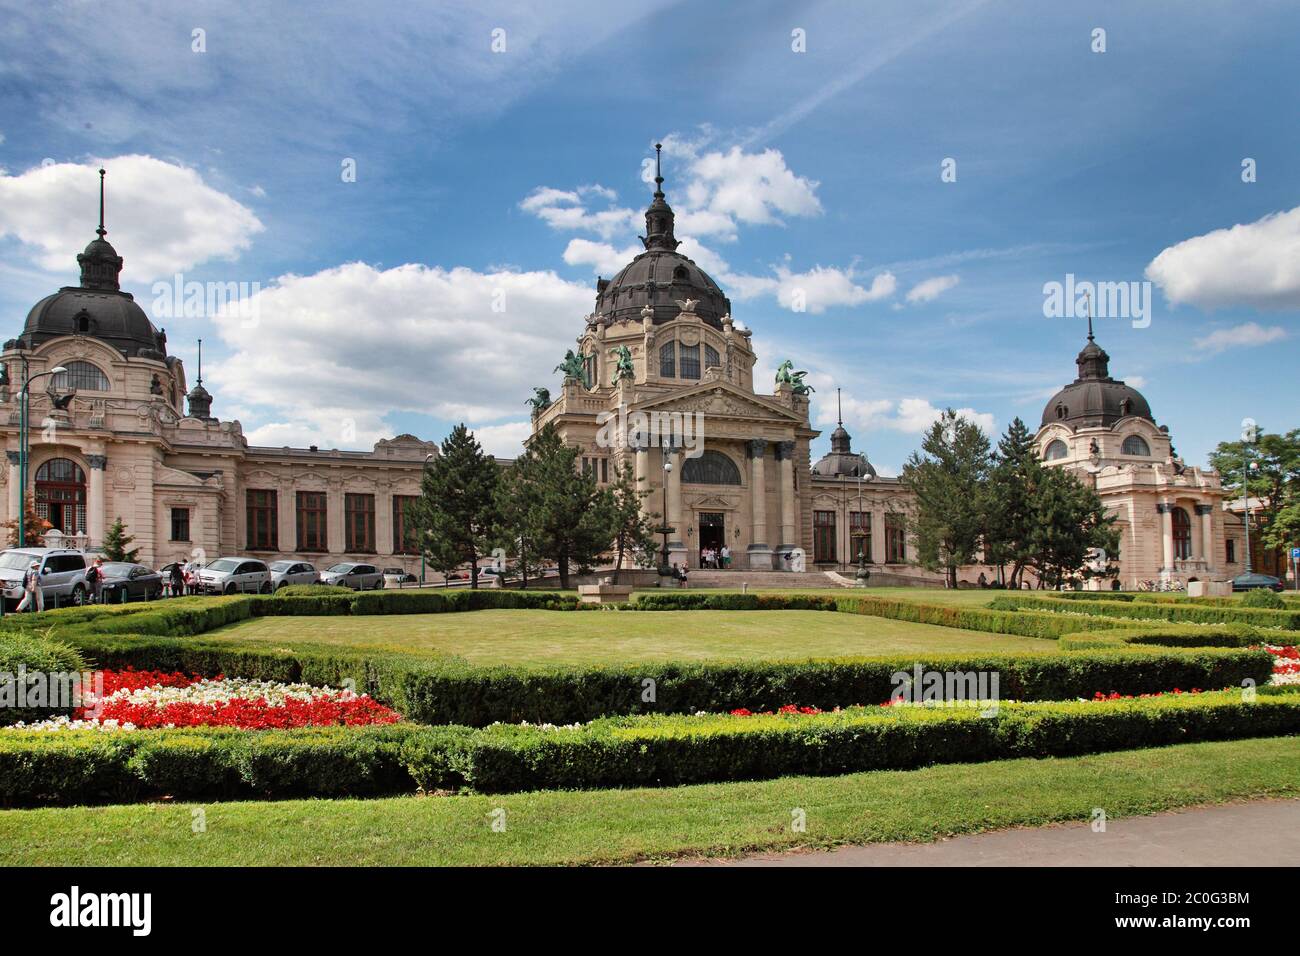 La célèbre Place Szechenyi (thermes) Szechenyi, spa et piscine dansdans le parc Varosliget (principale ville de Budapest, Hongrie) Banque D'Images